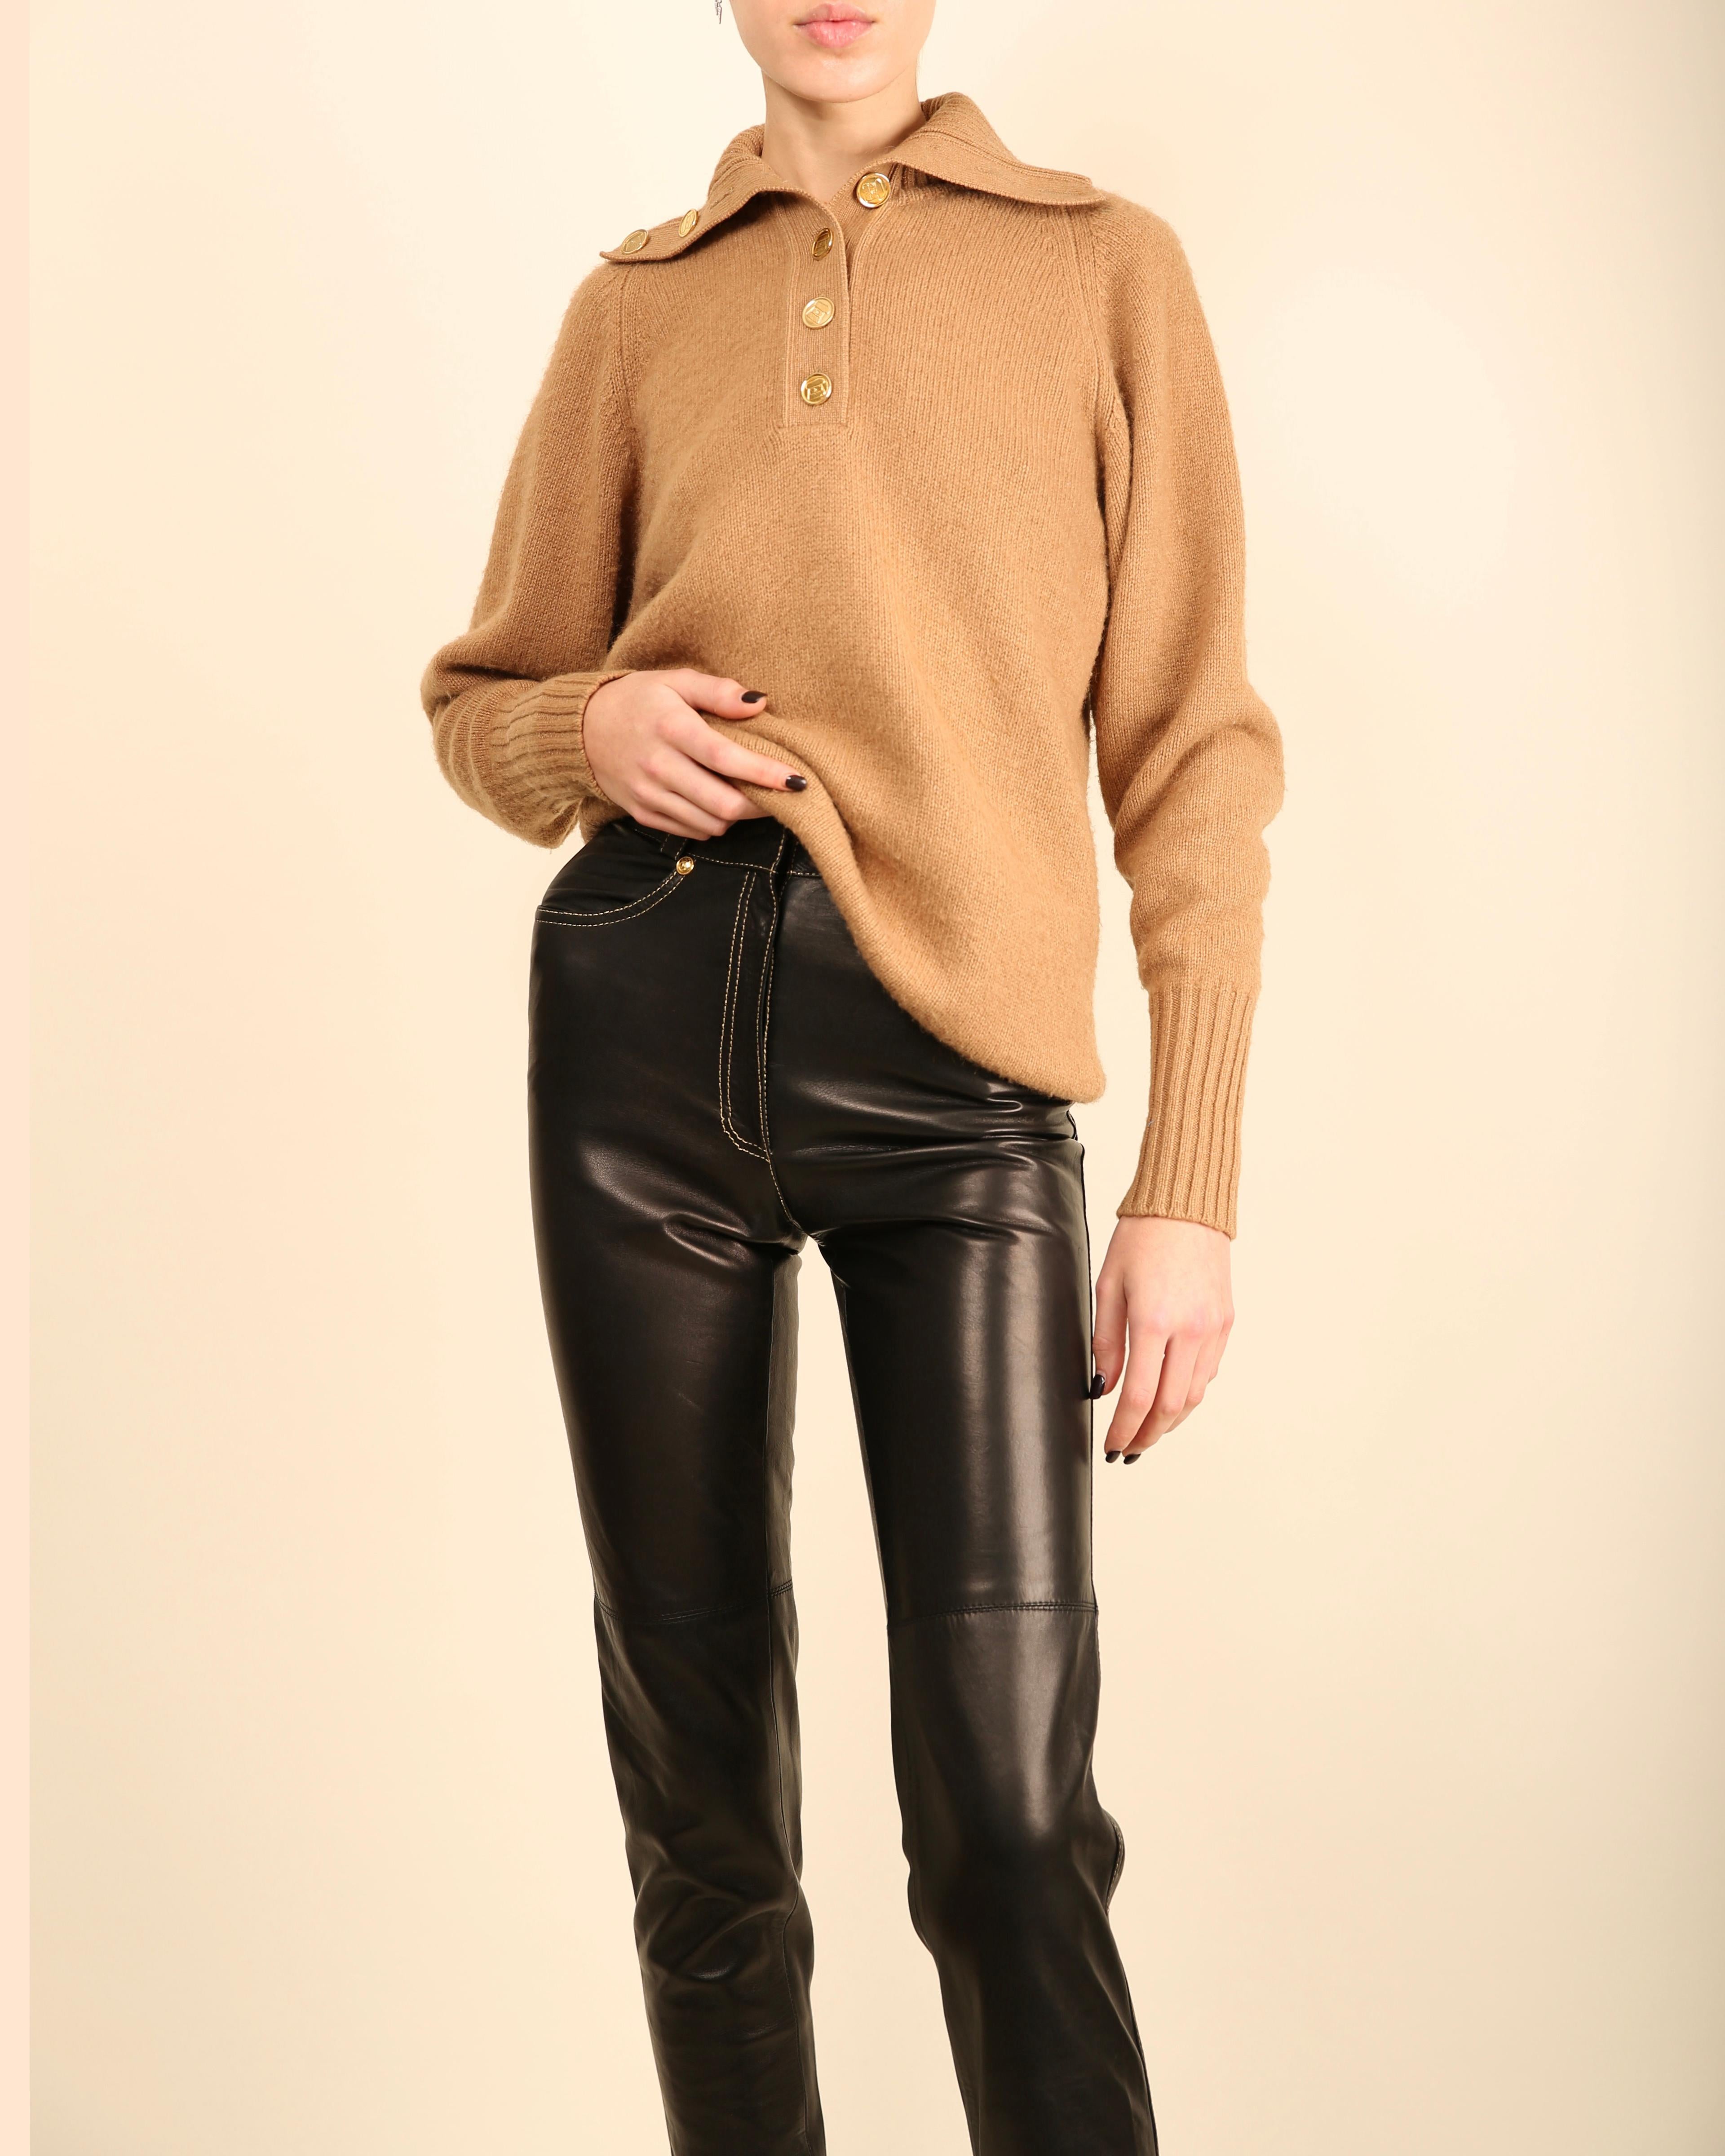 Chanel vtg tan camel beige turtleneck gold logo button cashmere dress sweater  For Sale 3